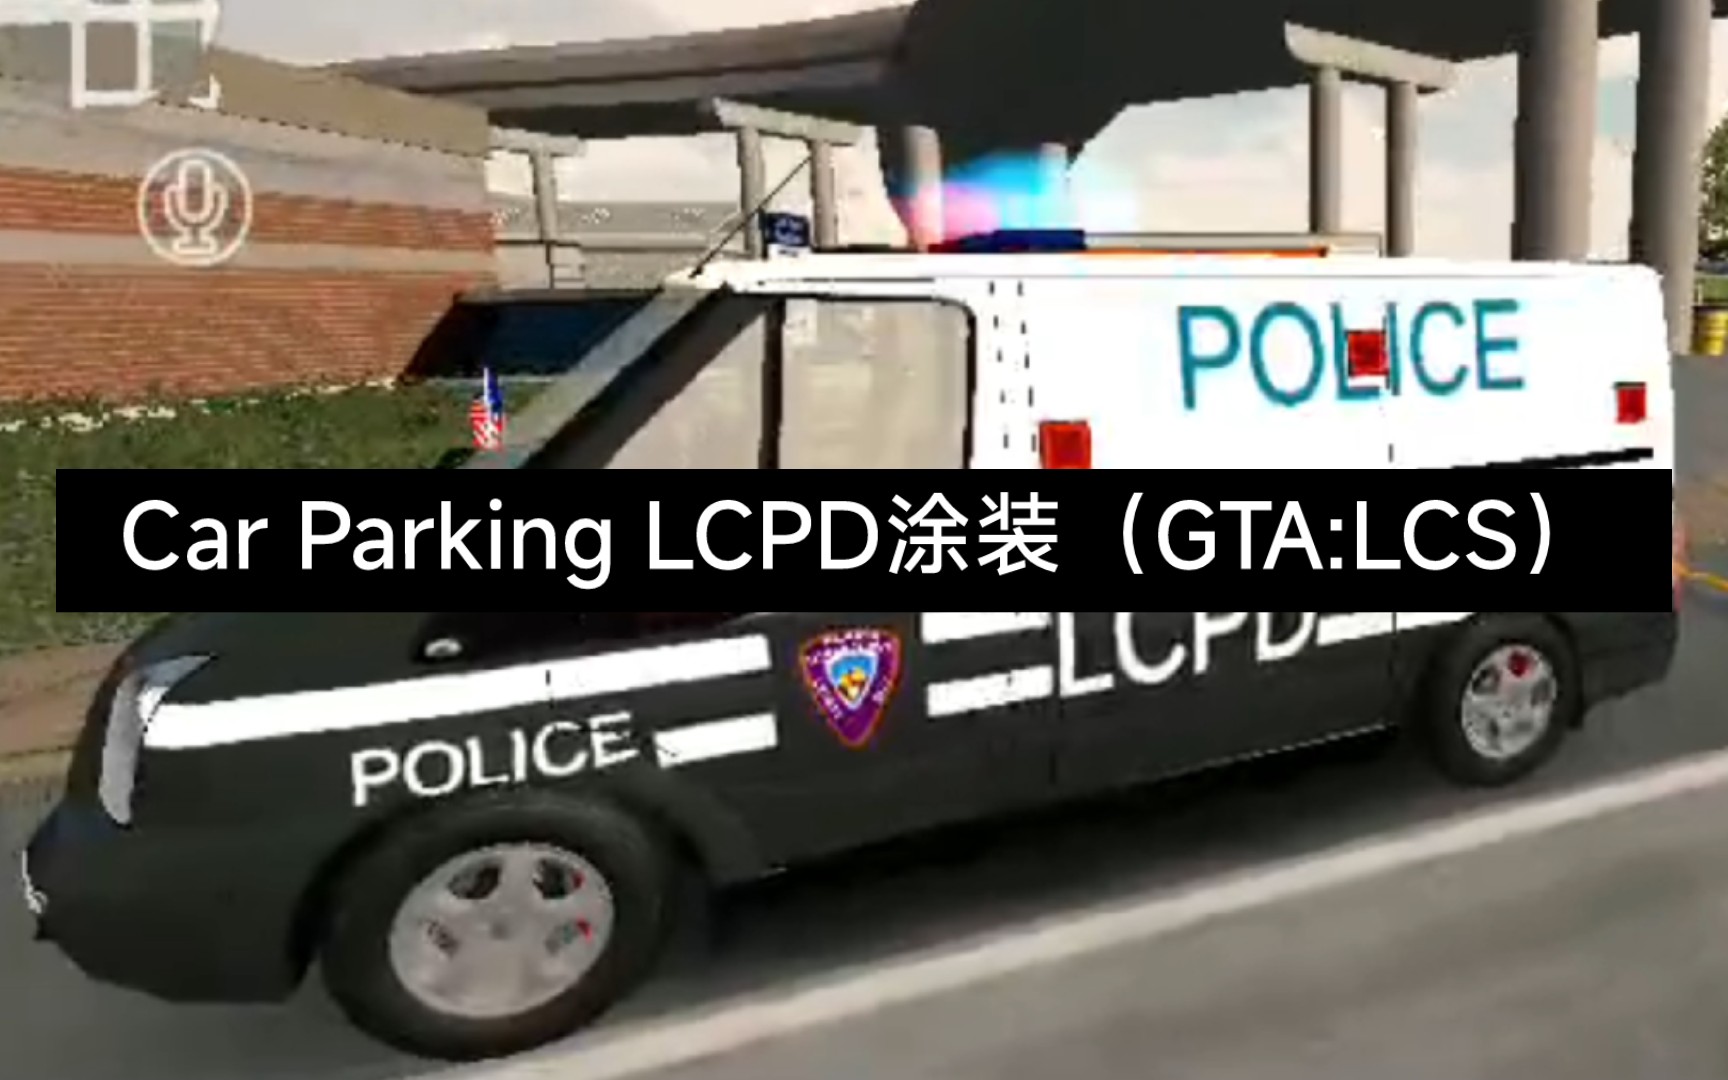 car parking gta:lcs lcpd 特警装甲卡车涂装